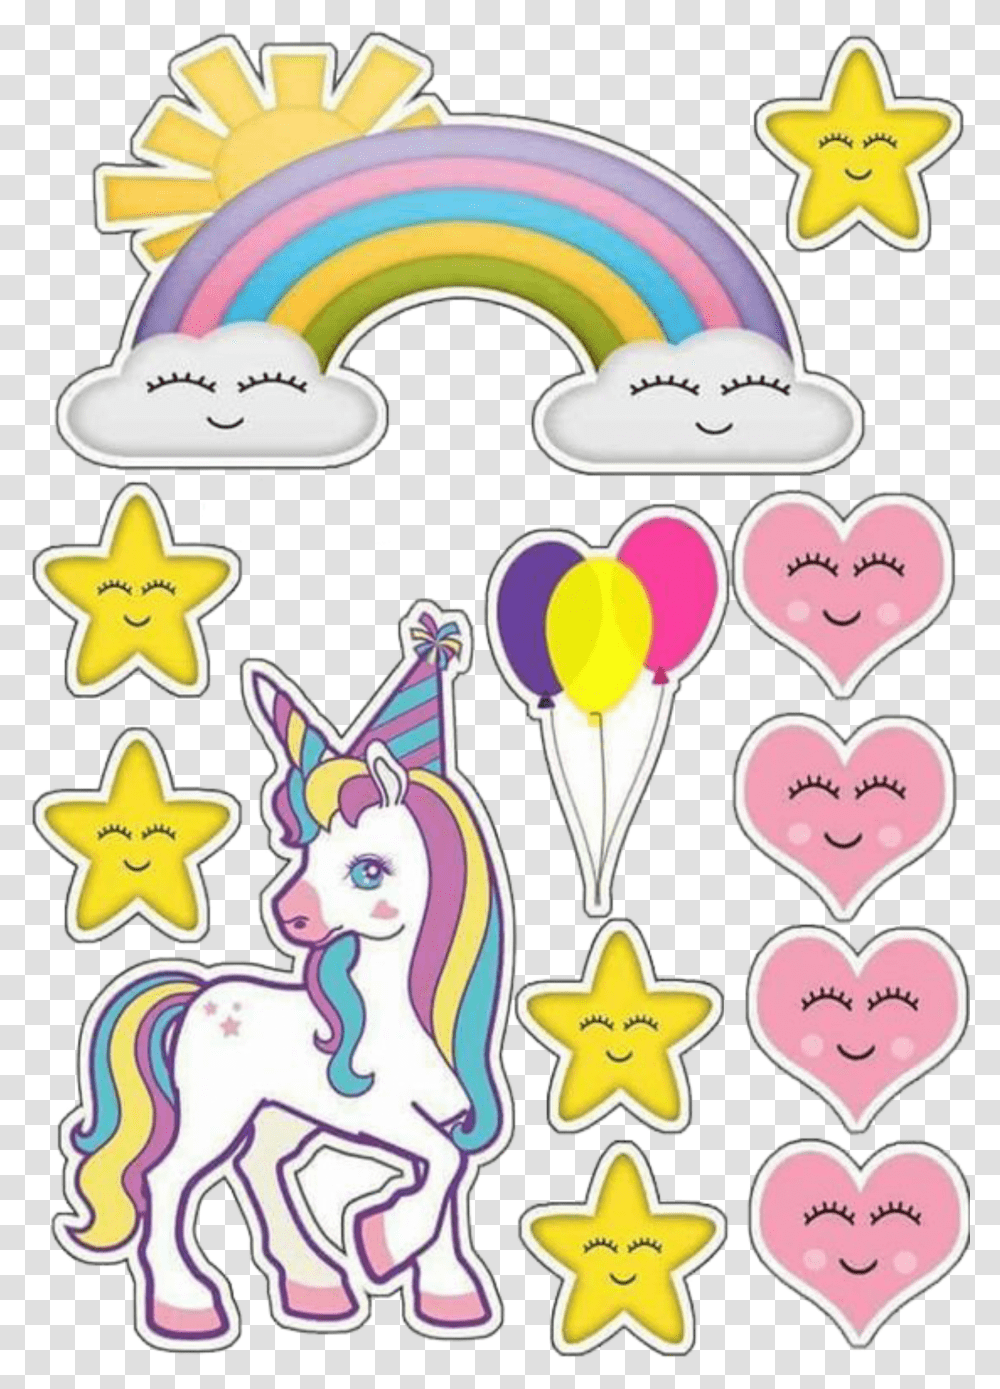 Lindas Imagens Decorativas Topo De Bolo Do Unicornio Topo De Bolo Unicornio Transparent Png